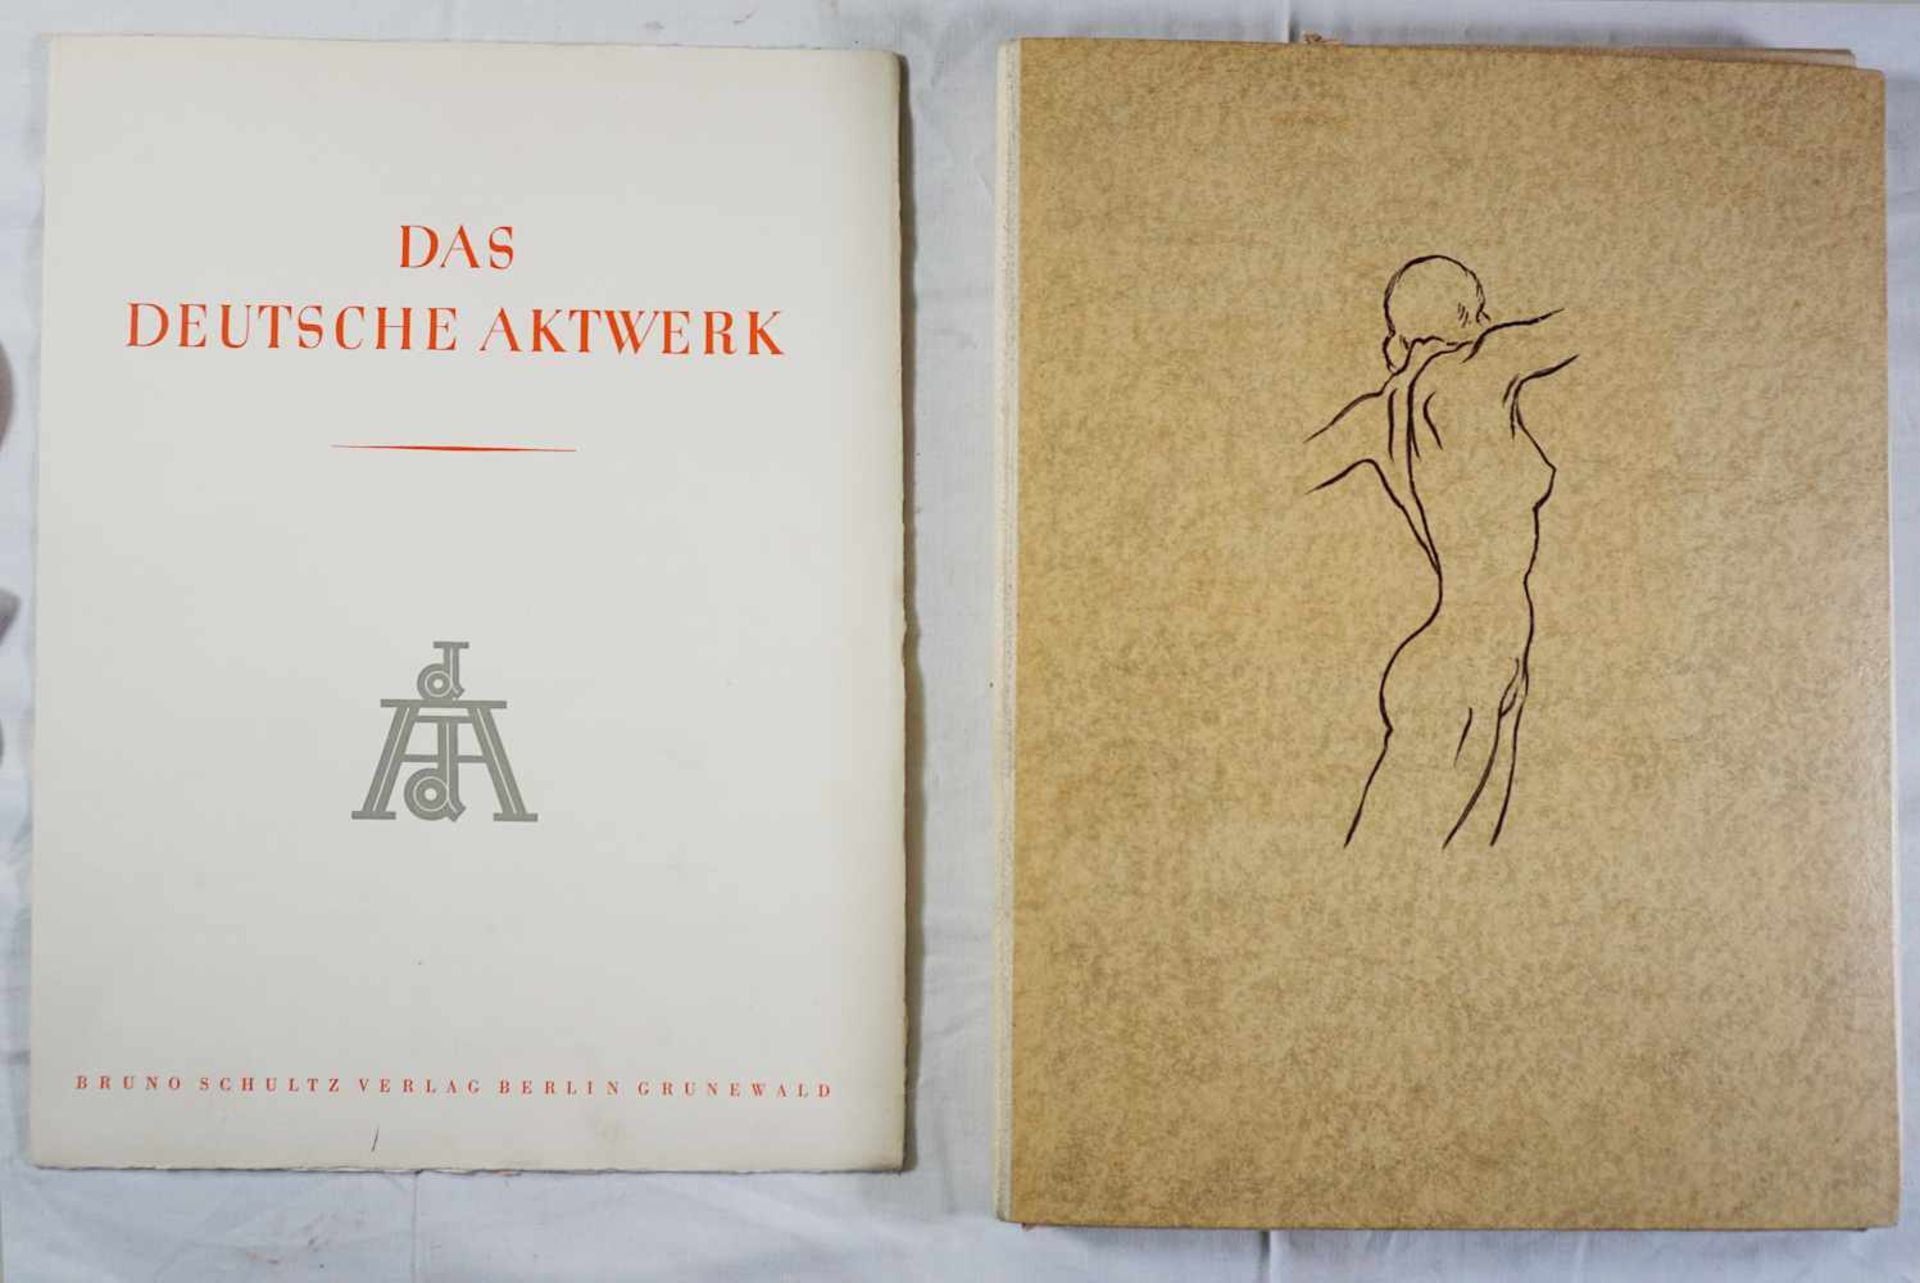 1 Künstlermappe "Das Deutsche Aktwerk" versch. FotografenBruno Schultz Verlag, Berlin